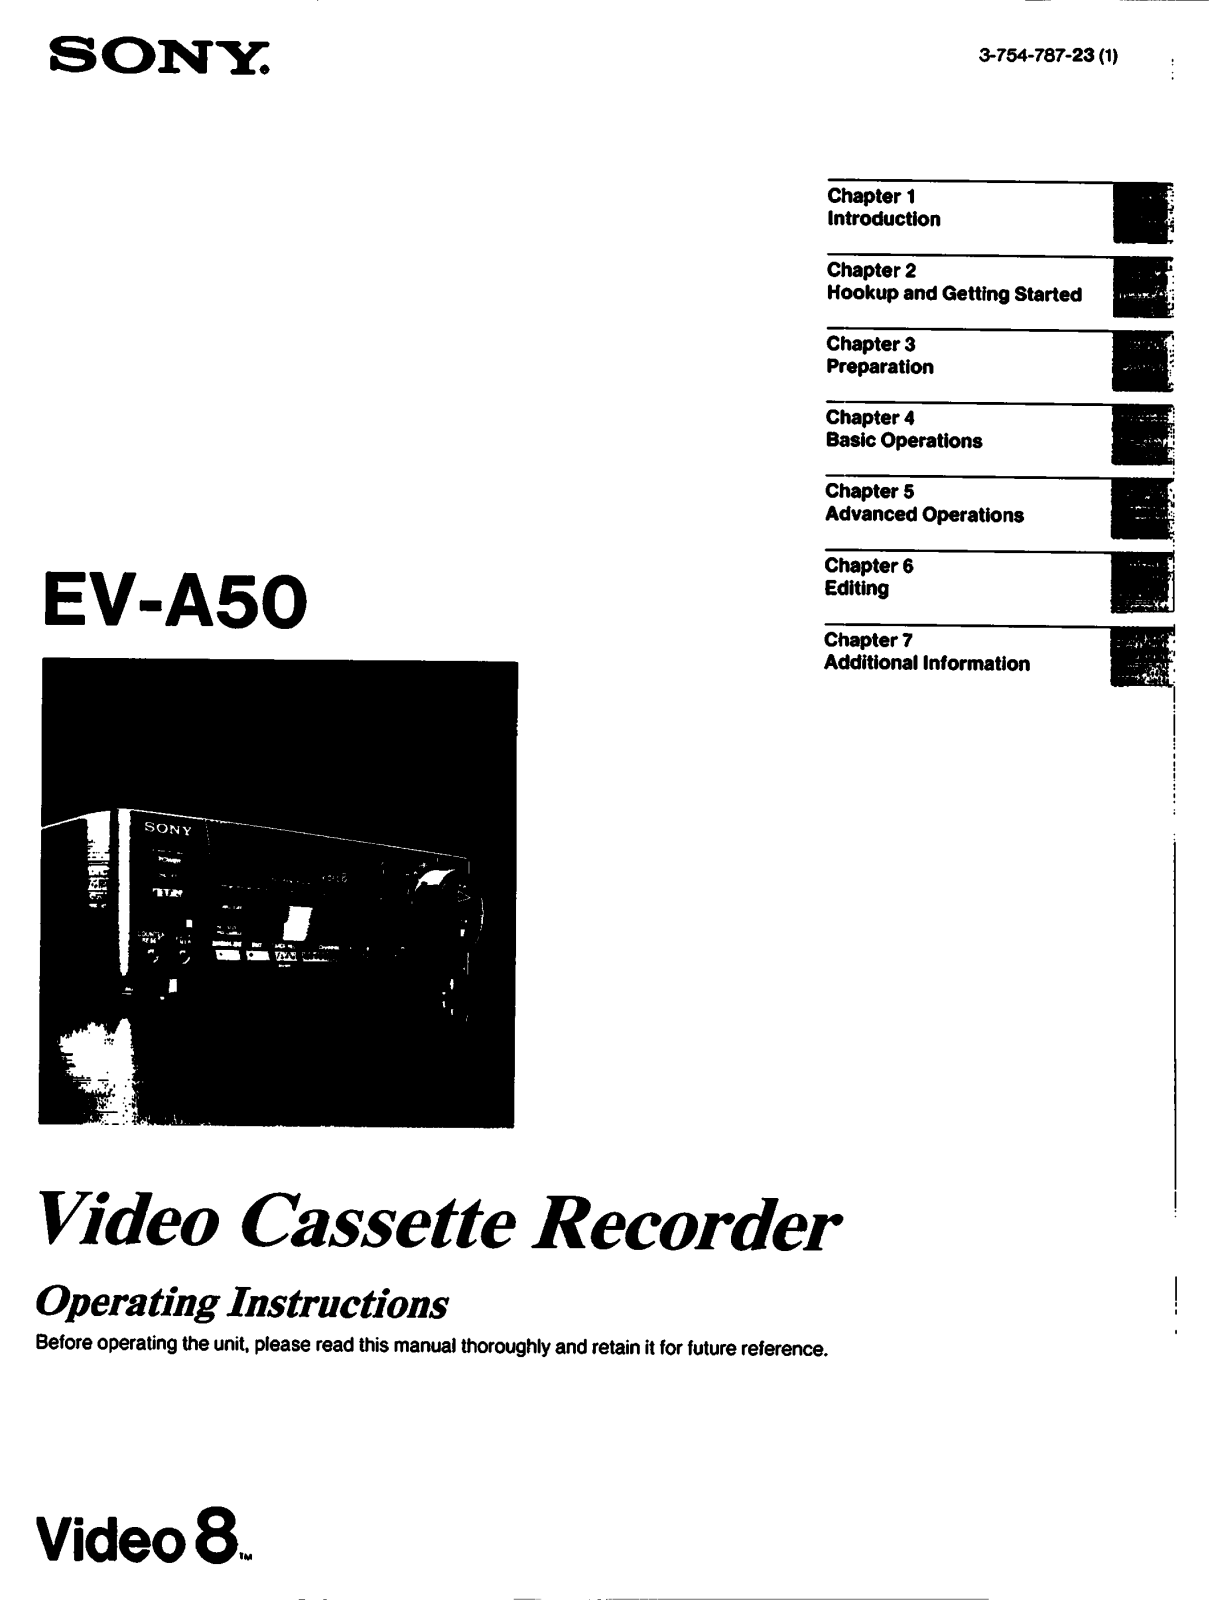 Sony EVA50 Operating Manual